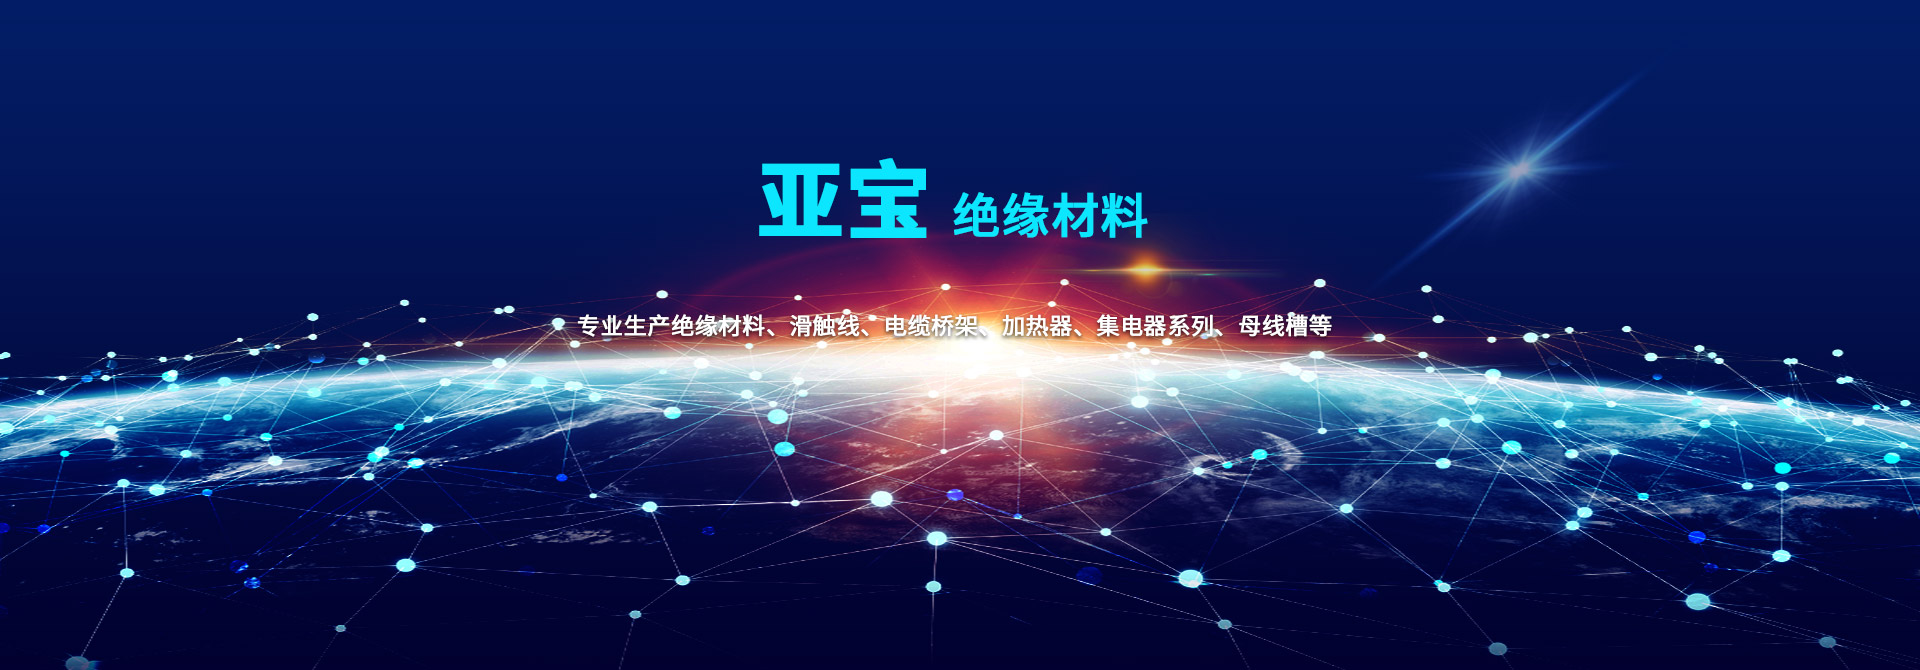 PG电子·(中国平台)官方网站 | 游戏官网_产品1576